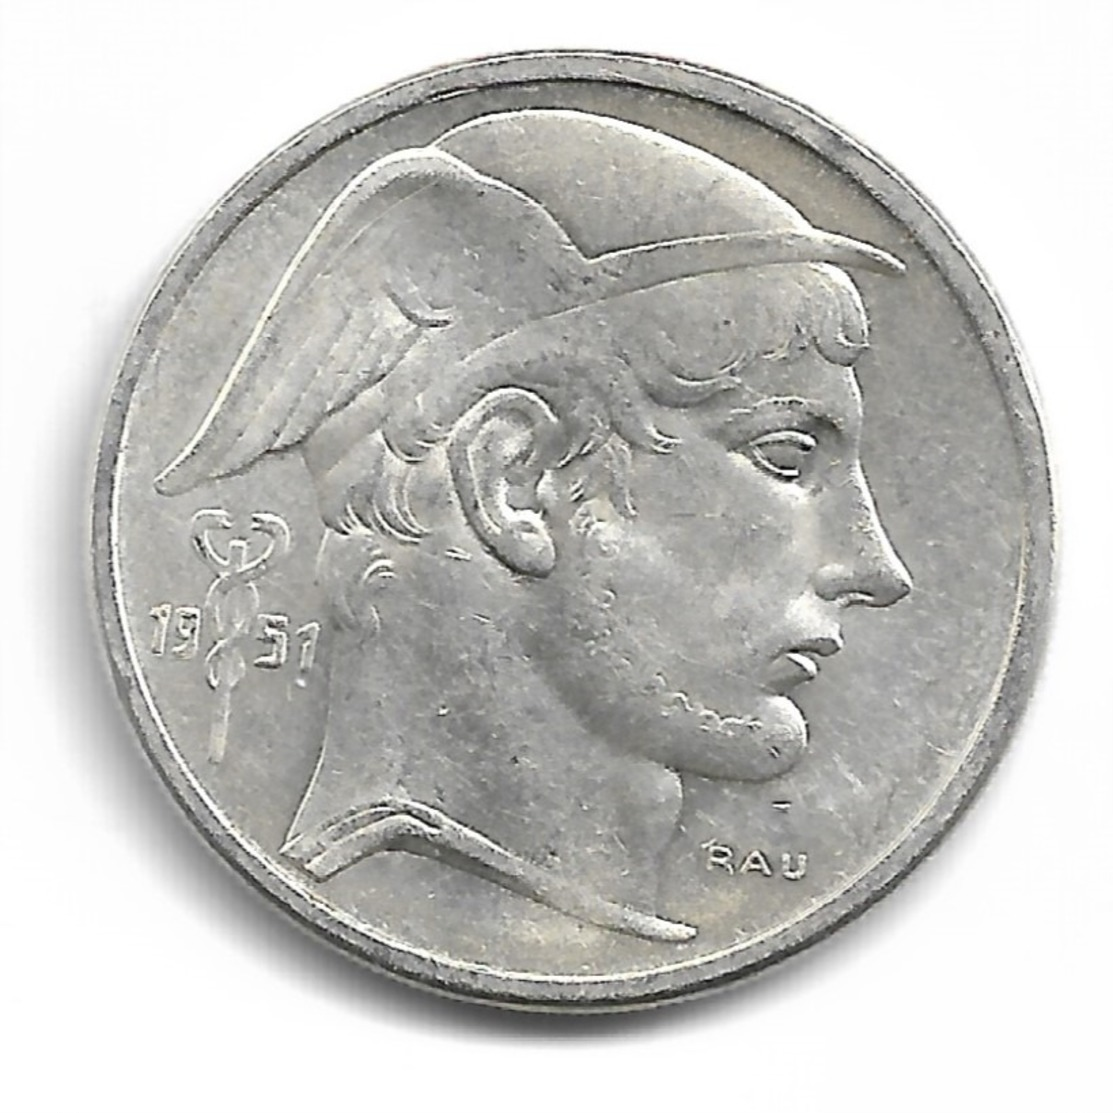 Belgique 50 Francs 1951 FR - Argent - 50 Francs